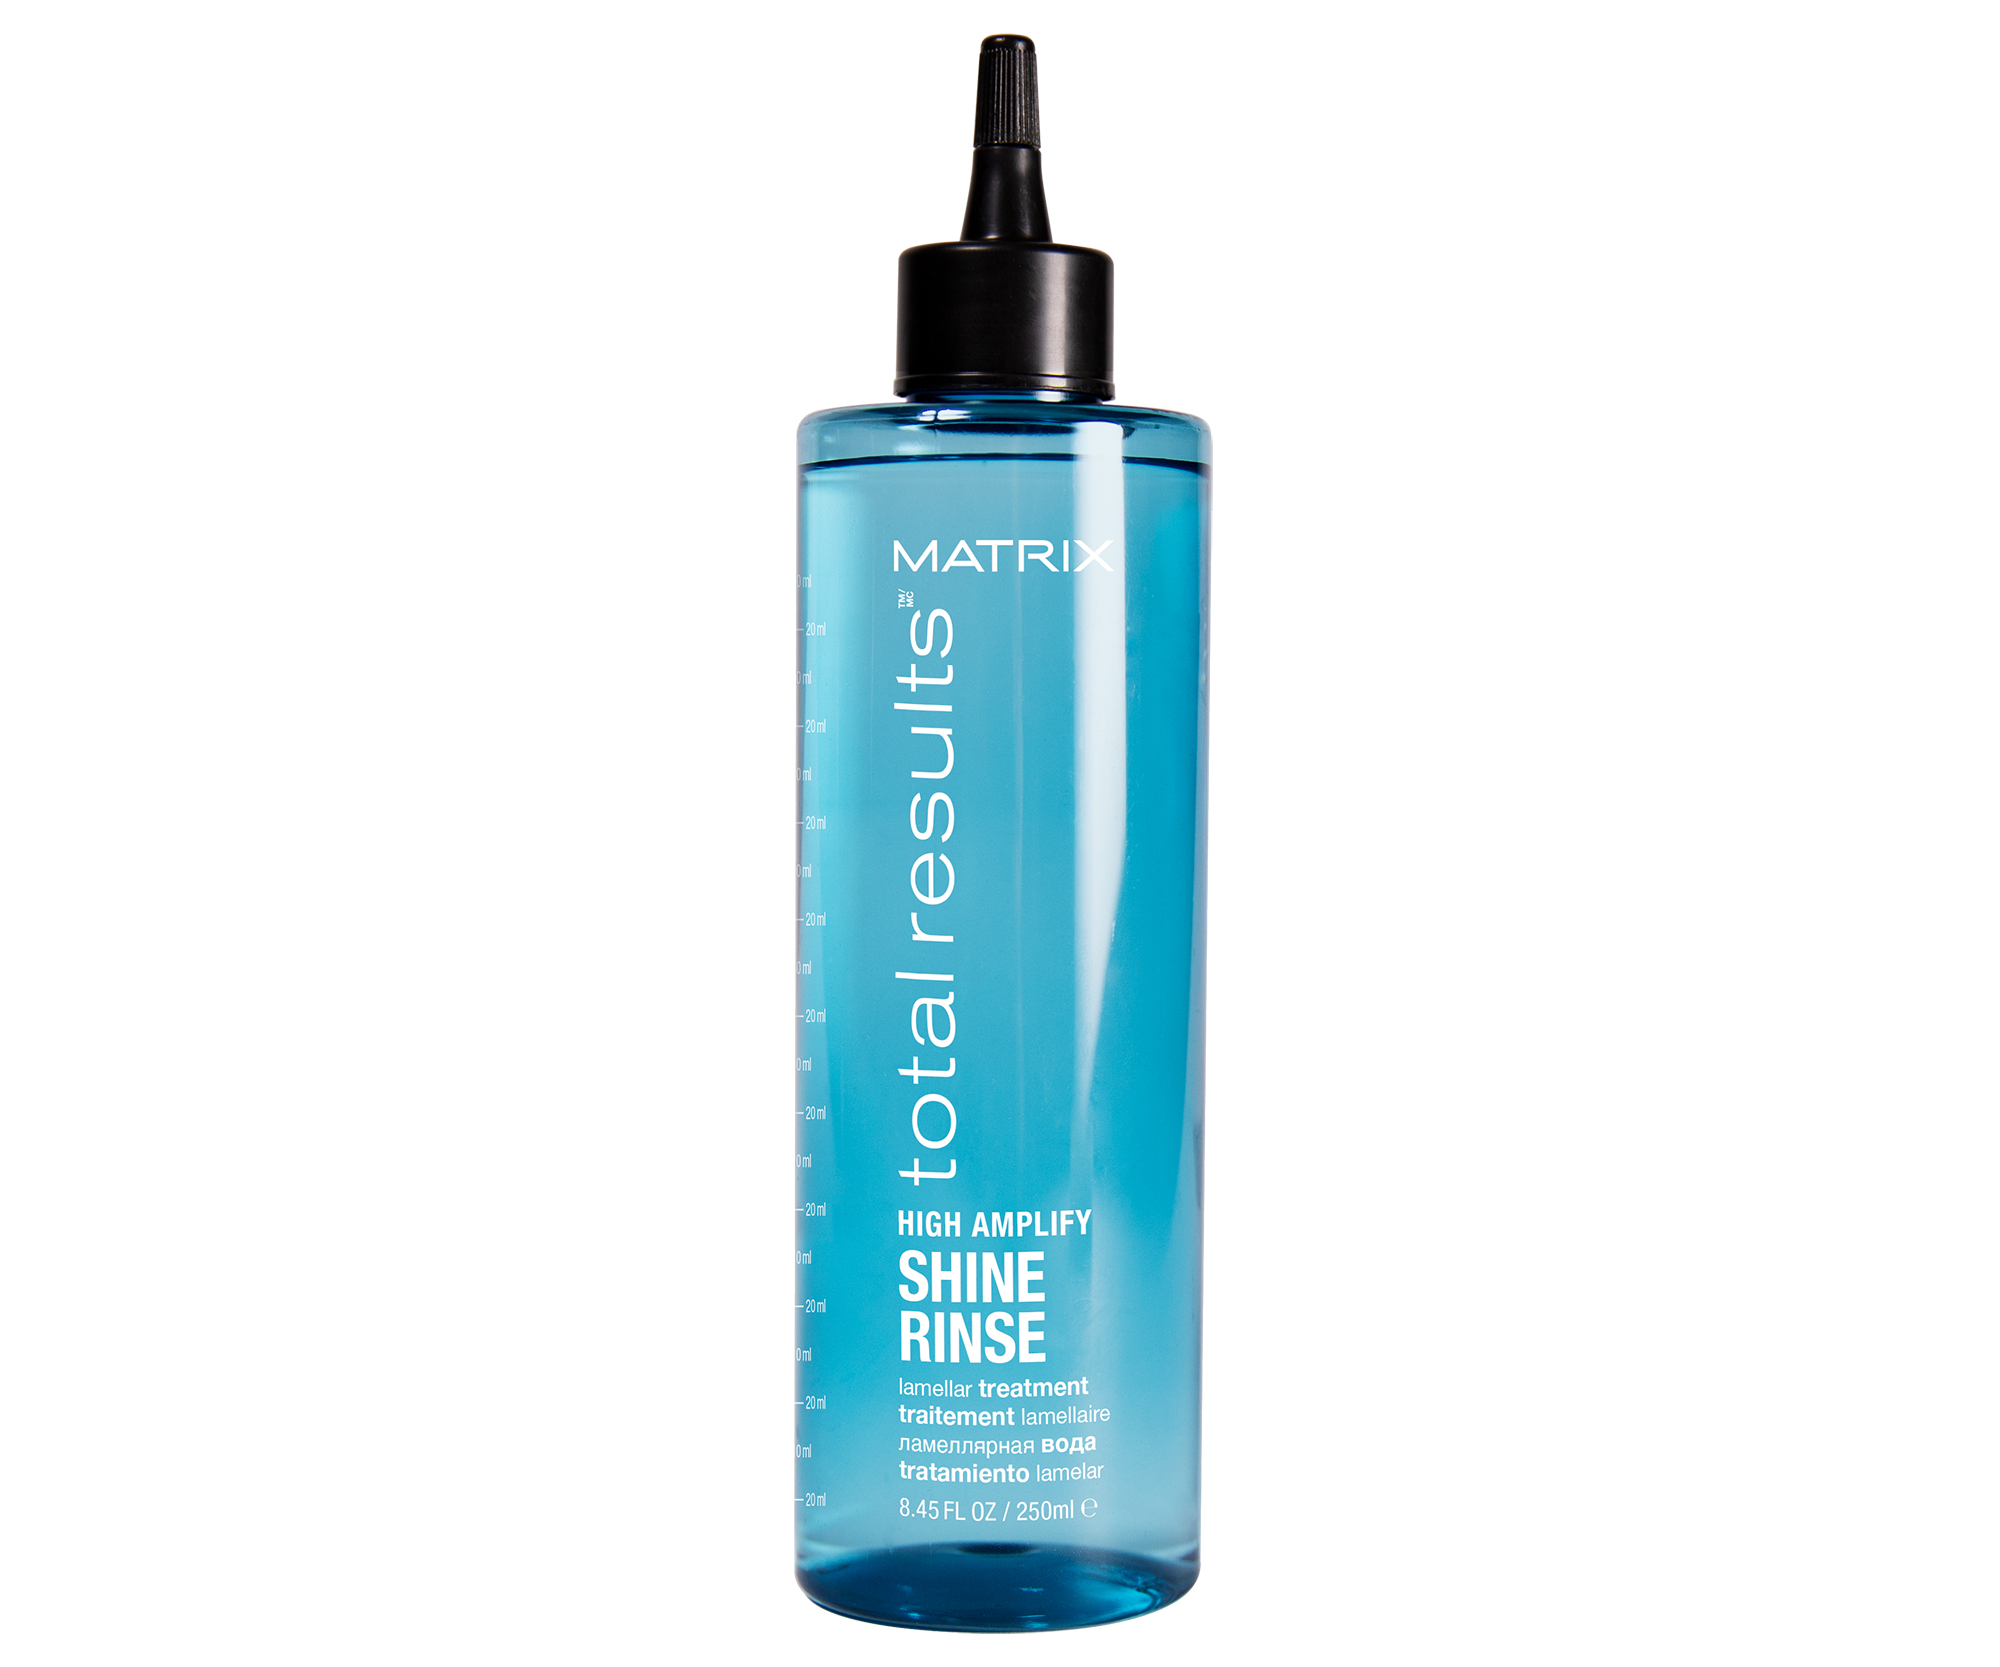 Péče pro hydrataci a lesk vlasů Matrix High Amplify Shine Rinse - 250 ml + dárek zdarma